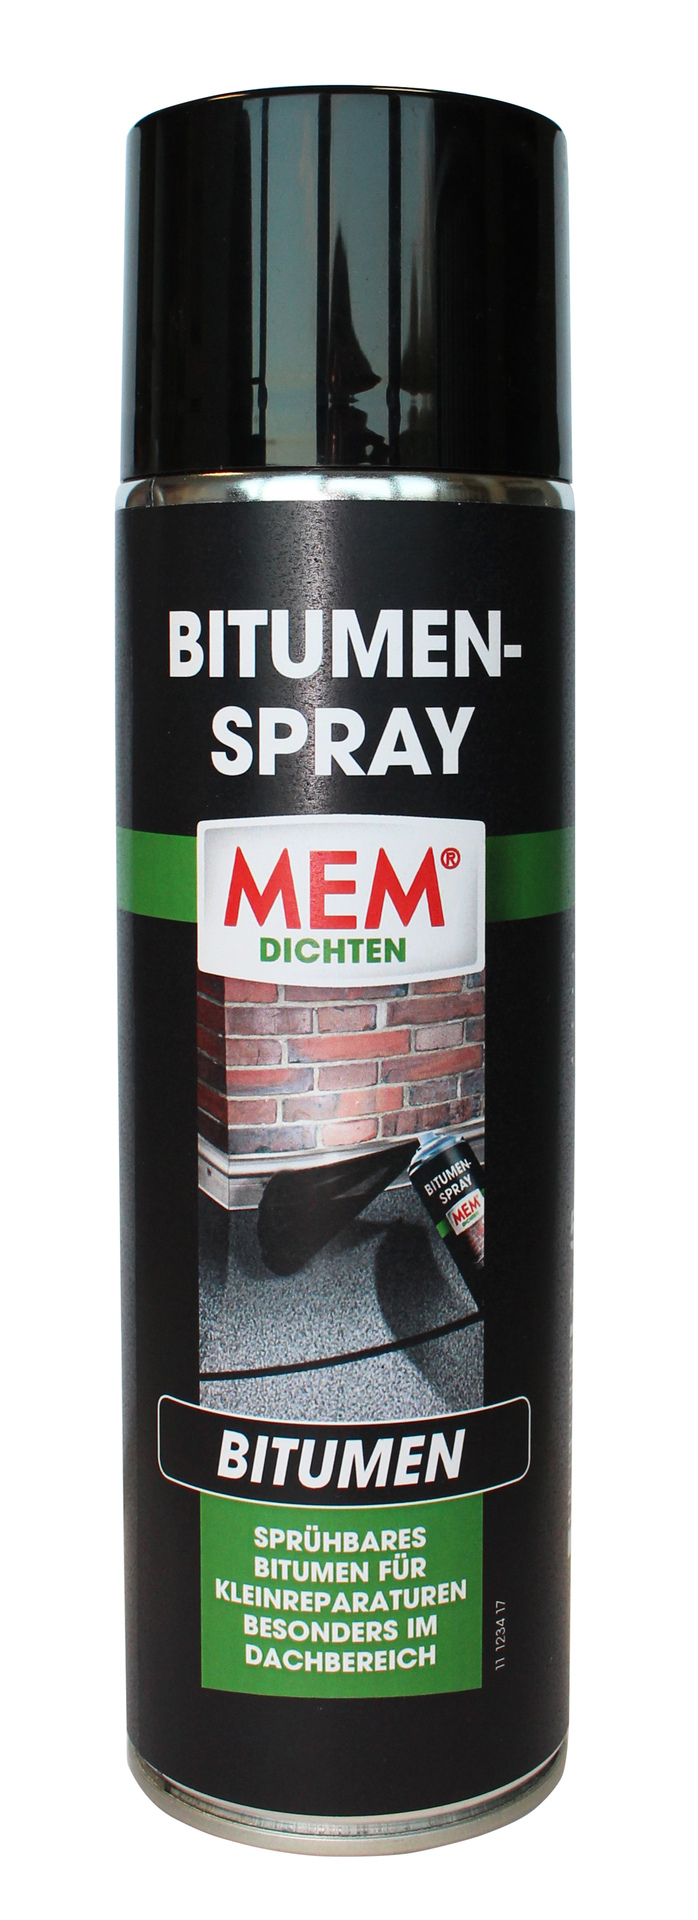 MEM Bauchemie GmbH Bitumenspray 500ml